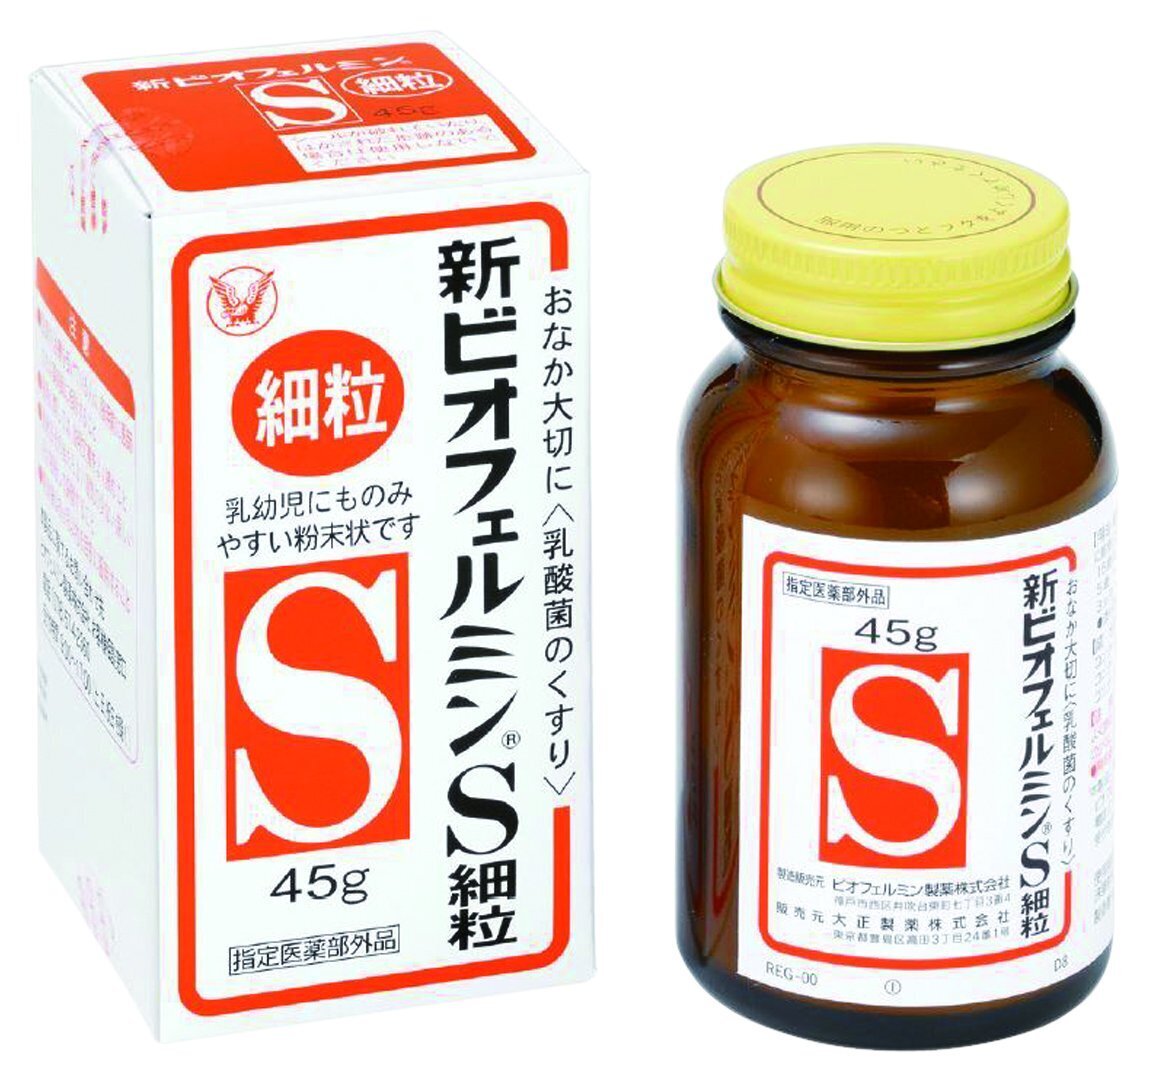 Shin Biofermin S Granular 45g